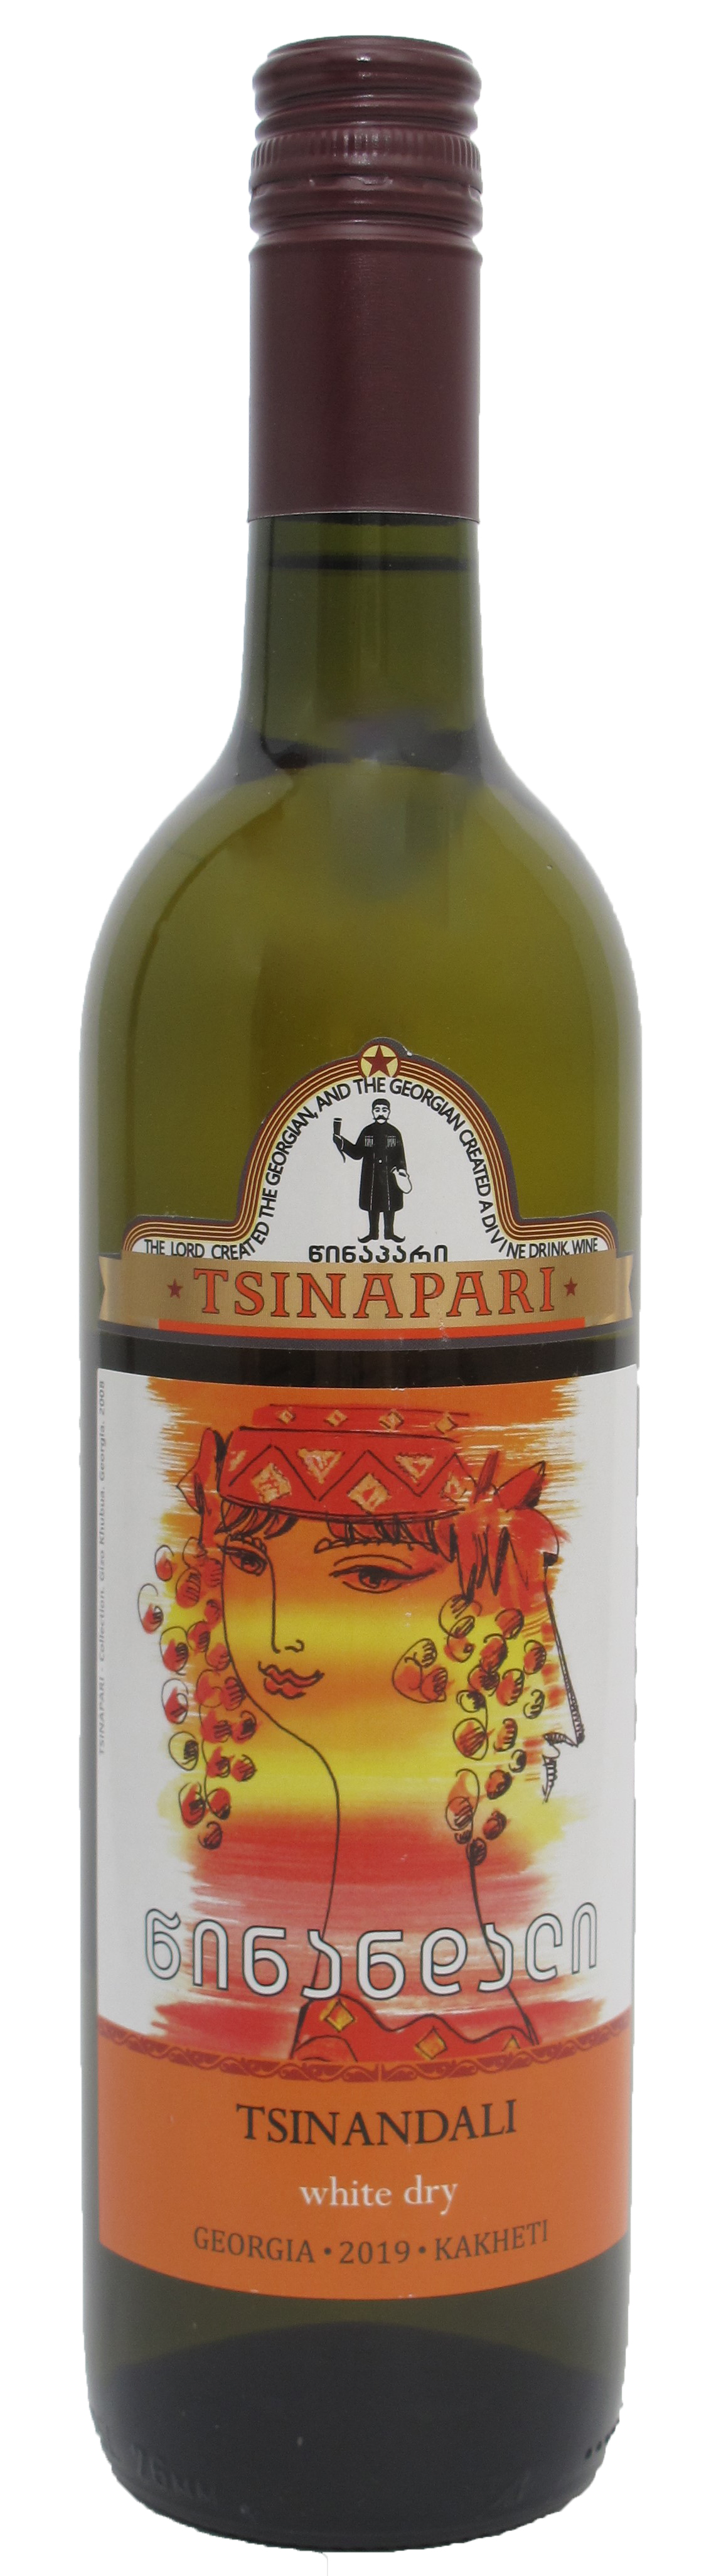 Georgischer - - Wein Amphorenwein TSINANDALI